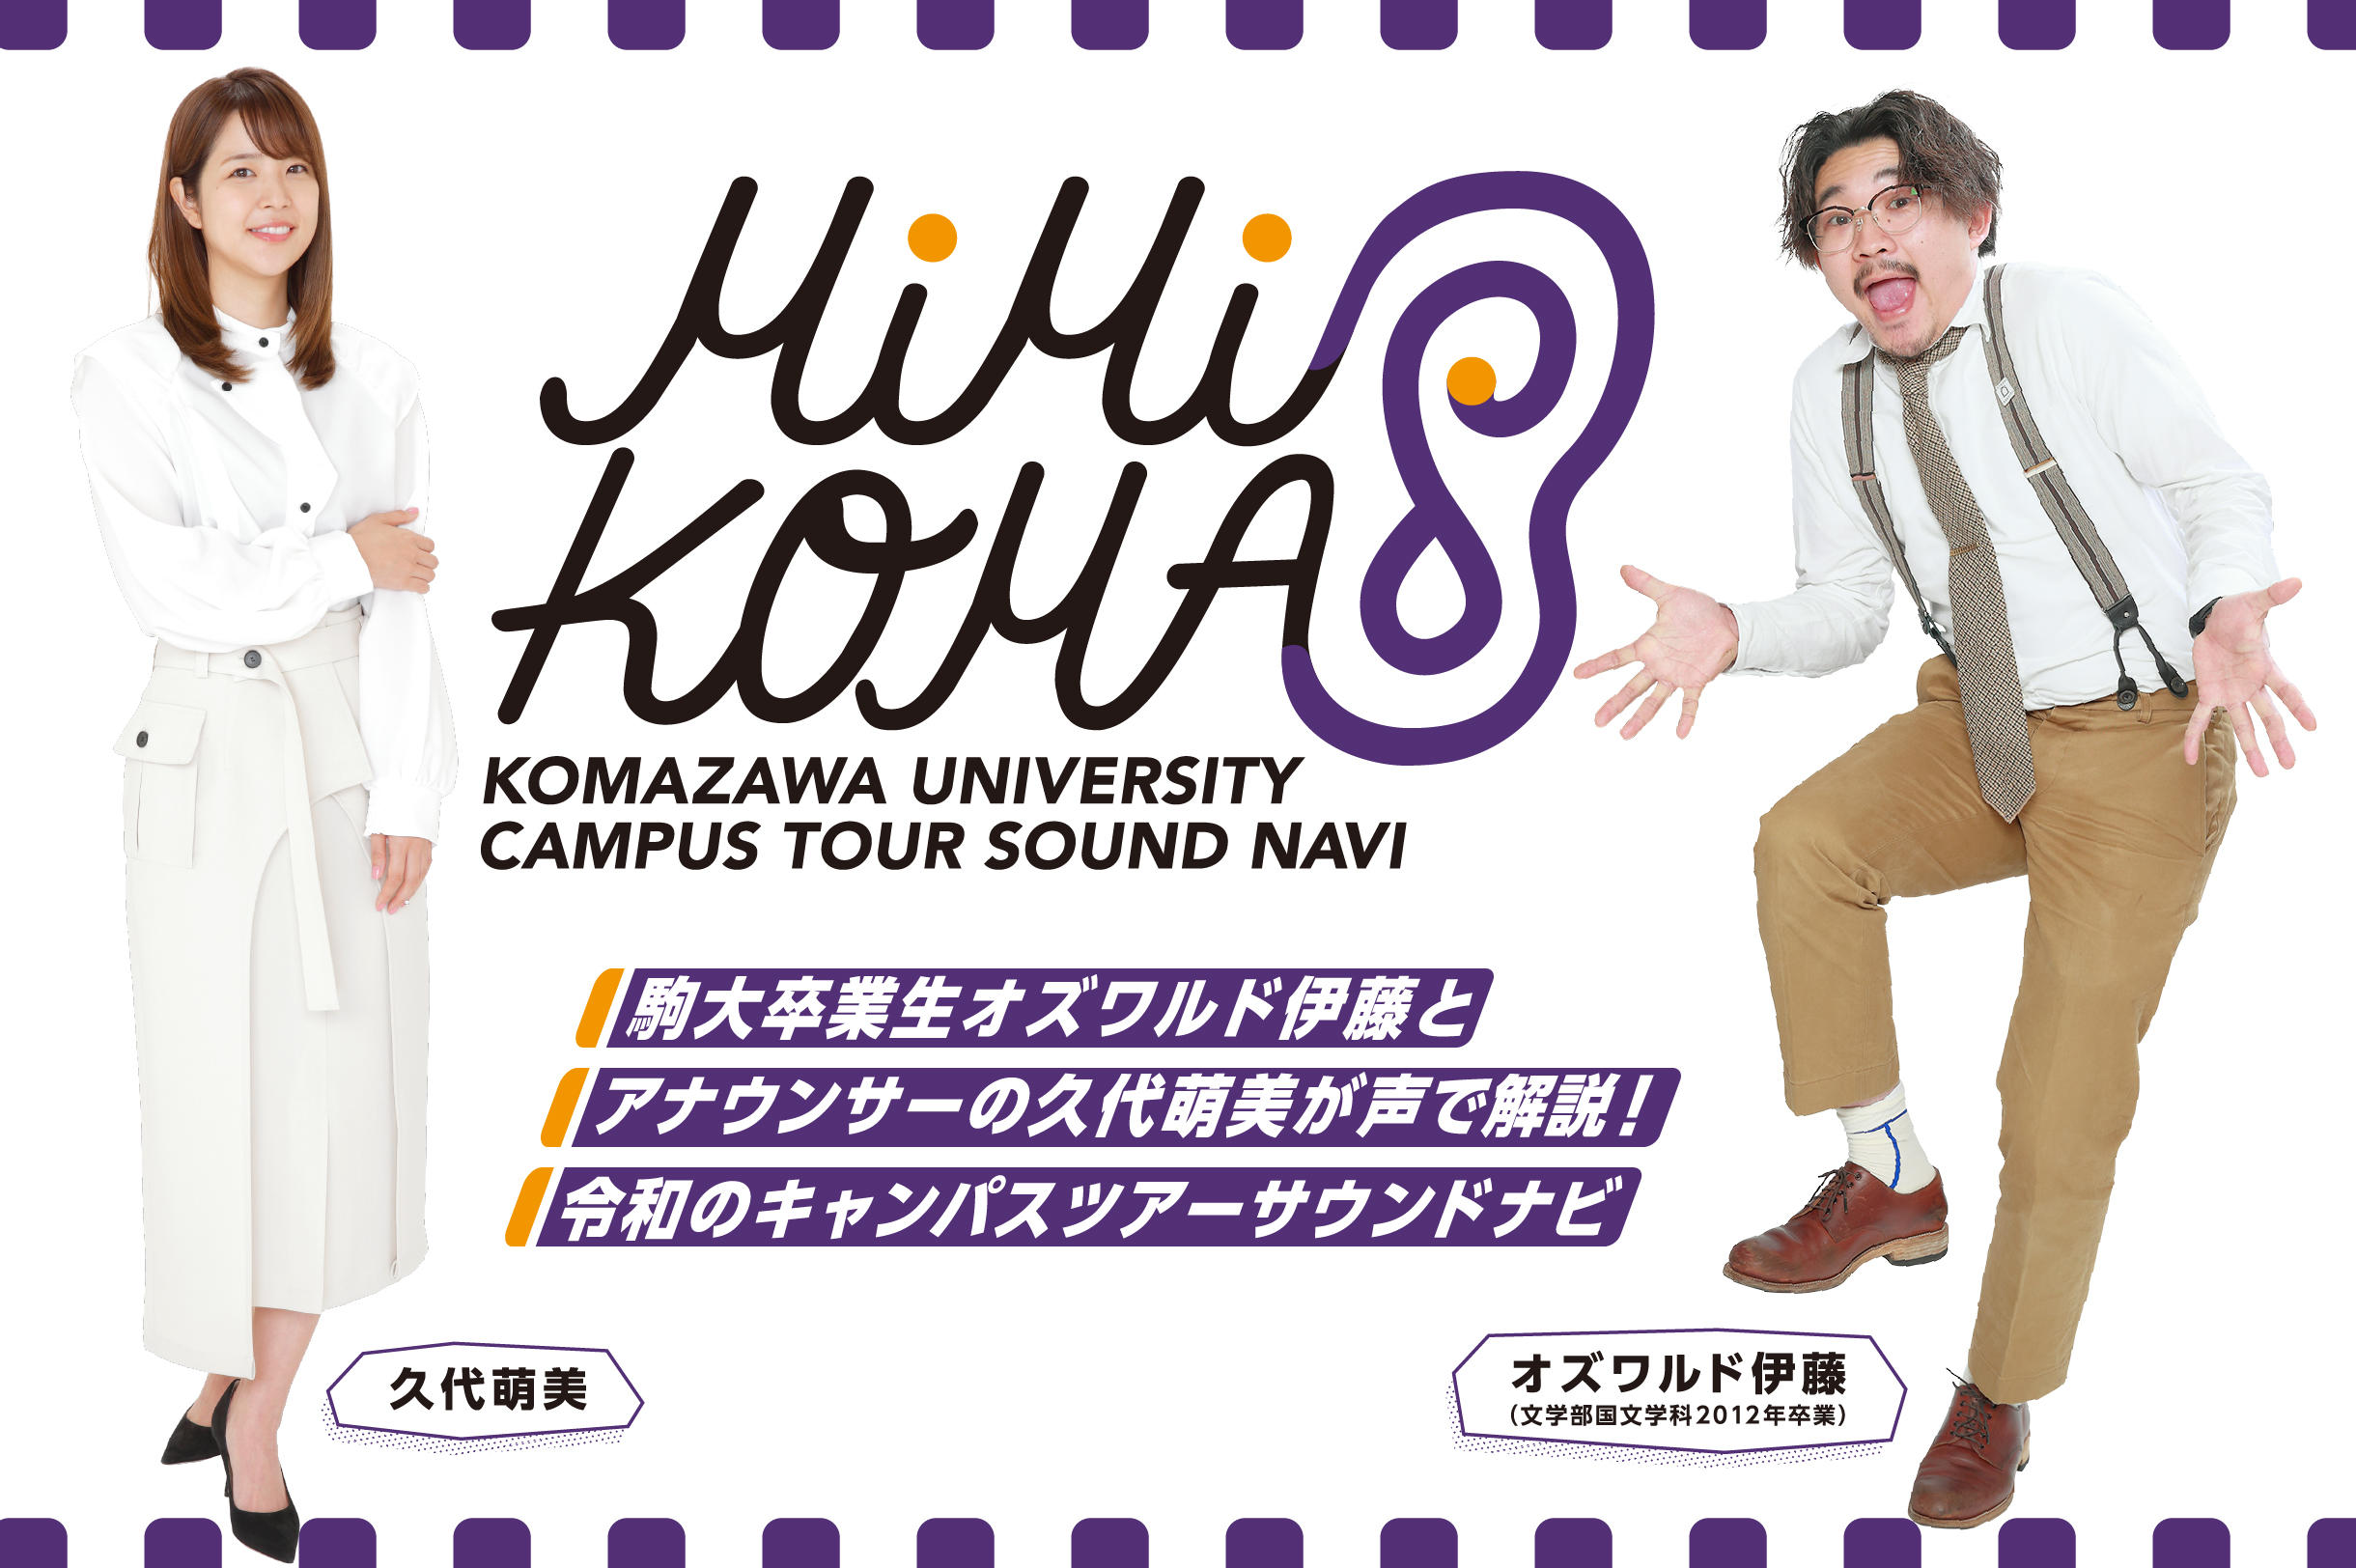 駒澤大学が音声AR技術を活用したキャンパスガイド「MiMi KOMA（みみこま）」をリリース -- オズワルドの伊藤俊介さん（卒業生）とアナウンサーの久代萌美さんがガイド